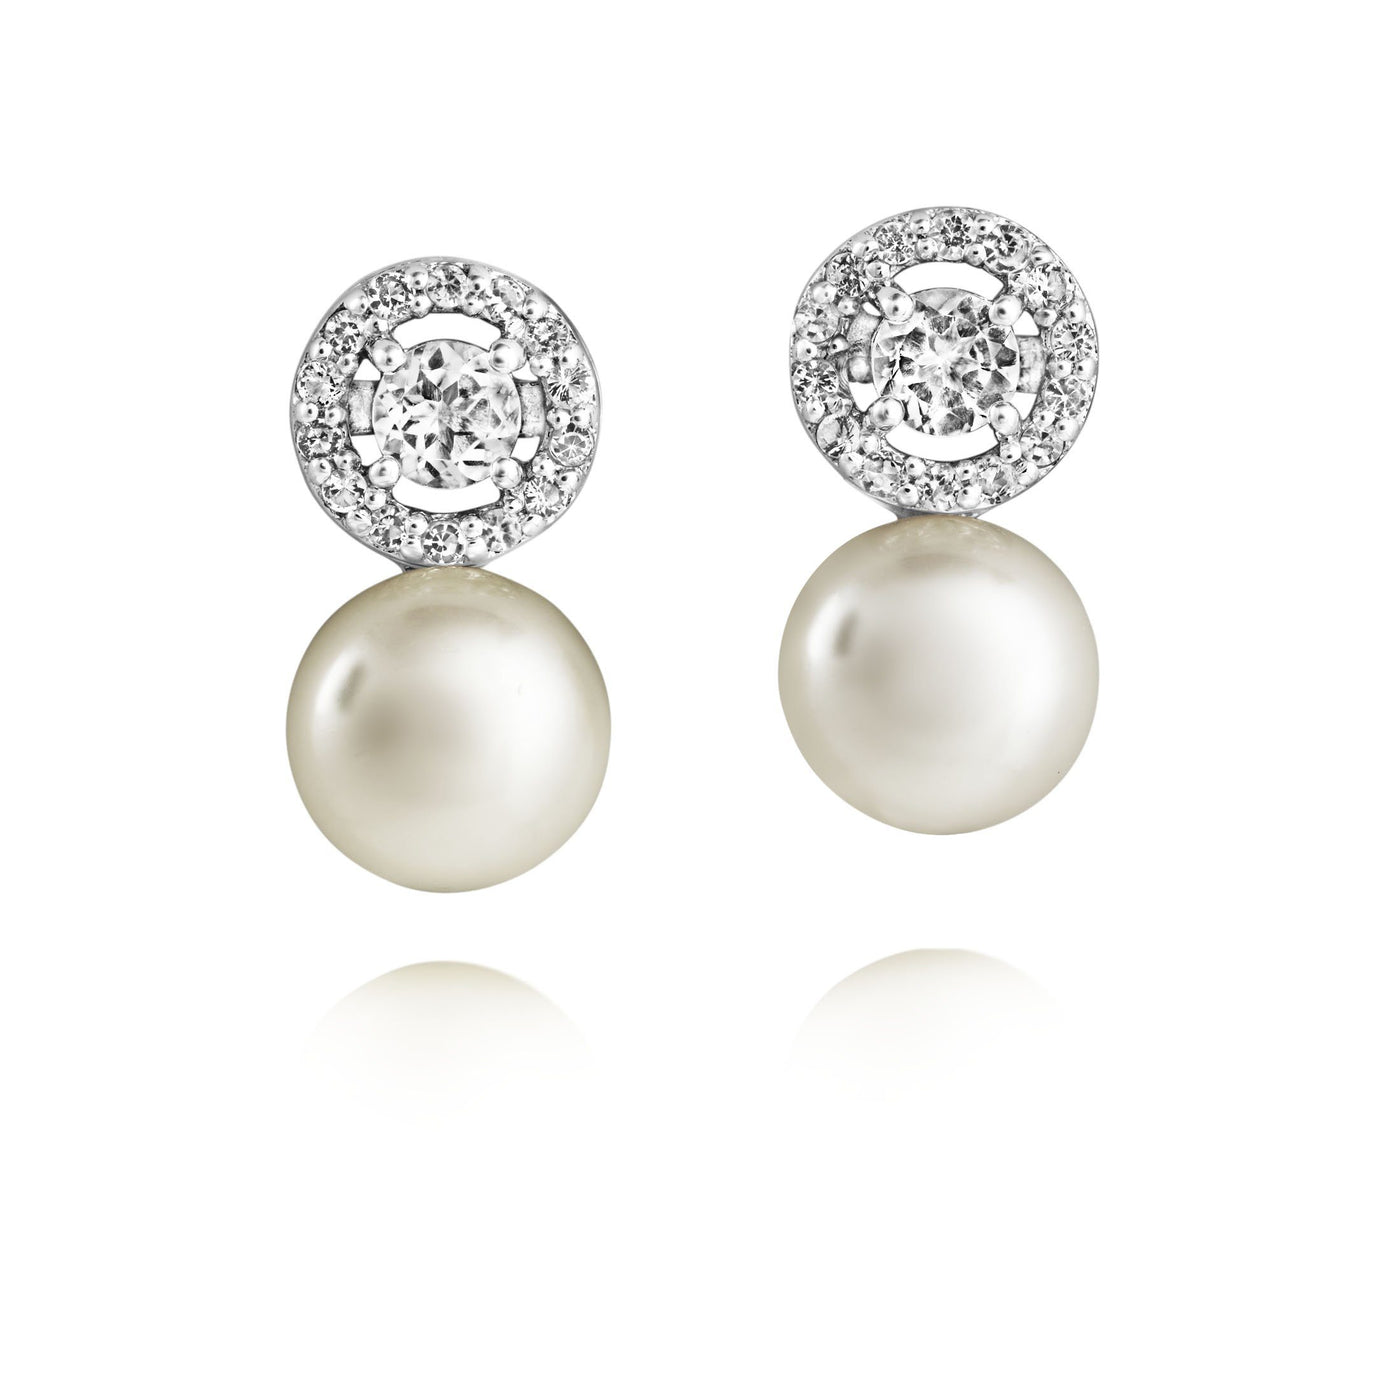 Jersey Pearl Amberley Halo Pearl Earrings - Silver & Topaz 1703306